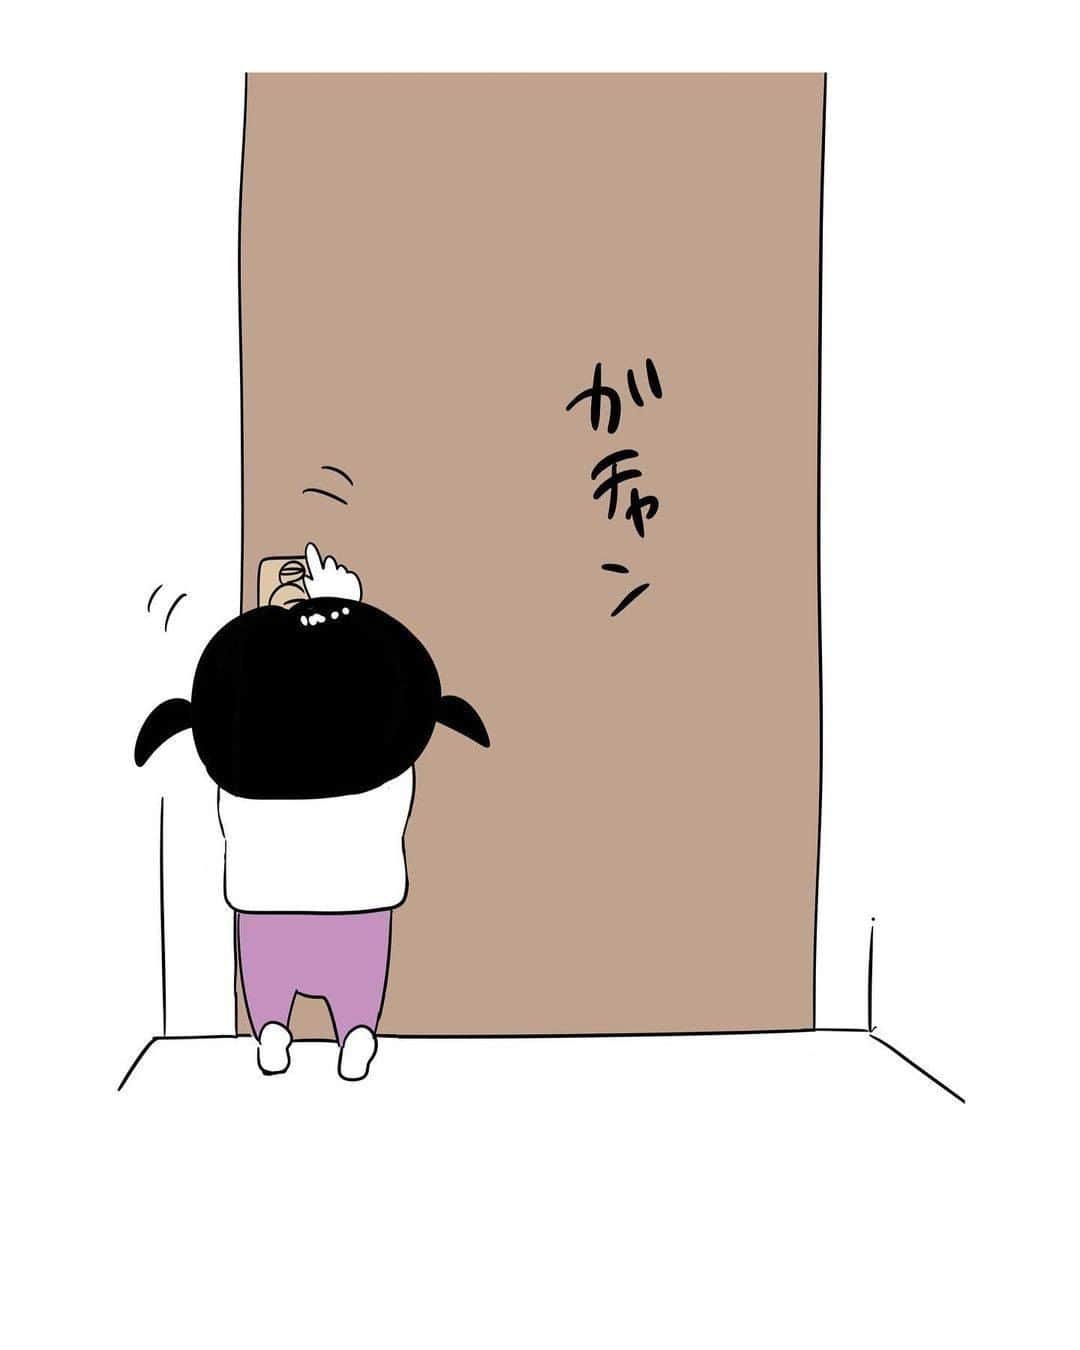 ママリさんのインスタグラム写真 - (ママリInstagram)「大きくなった時のデートが楽しみな母💕 #ママリ #家族を話そう⠀﻿⁠⁠⠀⁠ ⁠.⠀⠀﻿⁠⠀⁠ ＝＝＝⠀⠀⁠ .⁠ いつもトイレまでついてきて鍵を必ず閉める娘。 他の部屋に行った時もやたらドアを閉めるのでママを独り占めしたいのかな？って思うと もうたまらんですね。 . ⁠ ＝＝＝ ⁠ . ⠀﻿⁠⠀⁠ @shirota.yunya さん、素敵な投稿ありがとうございました✨⁠⠀⁠ . ⁠⠀⁠ ⌒⌒⌒⌒⌒⌒⌒⌒⌒⌒⌒⌒⌒⌒⌒⌒*⁣⠀﻿⁠⠀⁠⠀⁠ みんなのおすすめアイテム教えて❤ ​⠀﻿⁠⠀⁠⠀⁠ #ママリ口コミ大賞 ​⁣⠀﻿⁠⠀⁠⠀⁠ ⠀﻿⁠⠀⁠⠀⁠ ⁣新米ママの毎日は初めてのことだらけ！⁣⁣⠀﻿⁠⠀⁠⠀⁠ その1つが、買い物。 ⁣⁣⠀﻿⁠⠀⁠⠀⁠ ⁣⁣⠀﻿⁠⠀⁠⠀⁠ 「家族のために後悔しない選択をしたい…」 ⁣⁣⠀﻿⁠⠀⁠⠀⁠ ⁣⁣⠀﻿⁠⠀⁠⠀⁠ そんなママさんのために、⁣⁣⠀﻿⁠⠀⁠⠀⁠ ＼子育てで役立った！／ ⁣⁣⠀﻿⁠⠀⁠⠀⁠ ⁣⁣⠀﻿⁠⠀⁠⠀⁠ あなたのおすすめグッズ教えてください🙏 ​ ​ ⁣⁣⠀﻿⁠⠀⁠⠀⁠ ⠀﻿⁠⠀⁠⠀⁠ 【応募方法】⠀﻿⁠⠀⁠⠀⁠ #ママリ口コミ大賞 をつけて、⠀﻿⁠⠀⁠⠀⁠ アイテム・サービスの口コミを投稿するだけ✨⠀﻿⁠⠀⁠⠀⁠ ⁣⁣⠀﻿⁠⠀⁠⠀⁠ (例)⠀﻿⁠⠀⁠⠀⁠ 「このママバッグは神だった」⁣⁣⠀﻿⁠⠀⁠⠀⁠ 「これで寝かしつけ助かった！」⠀﻿⁠⠀⁠⠀⁠ ⠀﻿⁠⠀⁠⠀⁠ あなたのおすすめ、お待ちしてます ​⠀﻿⁠⠀⁠⠀⁠ ⁣⠀⠀﻿⁠⠀⁠⠀⁠ * ⌒⌒⌒⌒⌒⌒⌒⌒⌒⌒⌒⌒⌒⌒⌒⌒*⁣⠀⠀⠀⁣⠀⠀﻿⁠⠀⁠⠀⁠ ⁣💫先輩ママに聞きたいことありませんか？💫⠀⠀⠀⠀⁣⠀⠀﻿⁠⠀⁠⠀⁠ .⠀⠀⠀⠀⠀⠀⁣⠀⠀﻿⁠⠀⁠⠀⁠ 「悪阻っていつまでつづくの？」⠀⠀⠀⠀⠀⠀⠀⁣⠀⠀﻿⁠⠀⁠⠀⁠ 「妊娠から出産までにかかる費用は？」⠀⠀⠀⠀⠀⠀⠀⁣⠀⠀﻿⁠⠀⁠⠀⁠ 「陣痛・出産エピソードを教えてほしい！」⠀⠀⠀⠀⠀⠀⠀⁣⠀⠀﻿⁠⠀⁠⠀⁠ .⠀⠀⠀⠀⠀⠀⁣⠀⠀﻿⁠⠀⁠⠀⁠ あなたの回答が、誰かの支えになる。⠀⠀⠀⠀⠀⠀⠀⁣⠀⠀﻿⁠⠀⁠⠀⁠ .⠀⠀⠀⠀⠀⠀⁣⠀⠀﻿⁠⠀⠀⠀⠀⠀⠀⠀⠀⠀⠀⠀⠀⁠⠀⁠⠀⁠ 👶🏻　💐　👶🏻　💐　👶🏻 💐　👶🏻 💐﻿⁠ #育児日記 #育児漫画 #子育て #育児絵日記 #育児イラスト #子育て日記 #成長記録  #子育て漫画 #子育て記録 #子育て絵日記 #子育てあるある #育児あるある #ママあるある #赤ちゃんあるある #新生児#0歳 #1歳 #2歳 #3歳 #産後 #女の子ママ#男の子ママ #トイレ#鍵#娘好き#結婚」12月21日 12時03分 - mamari_official